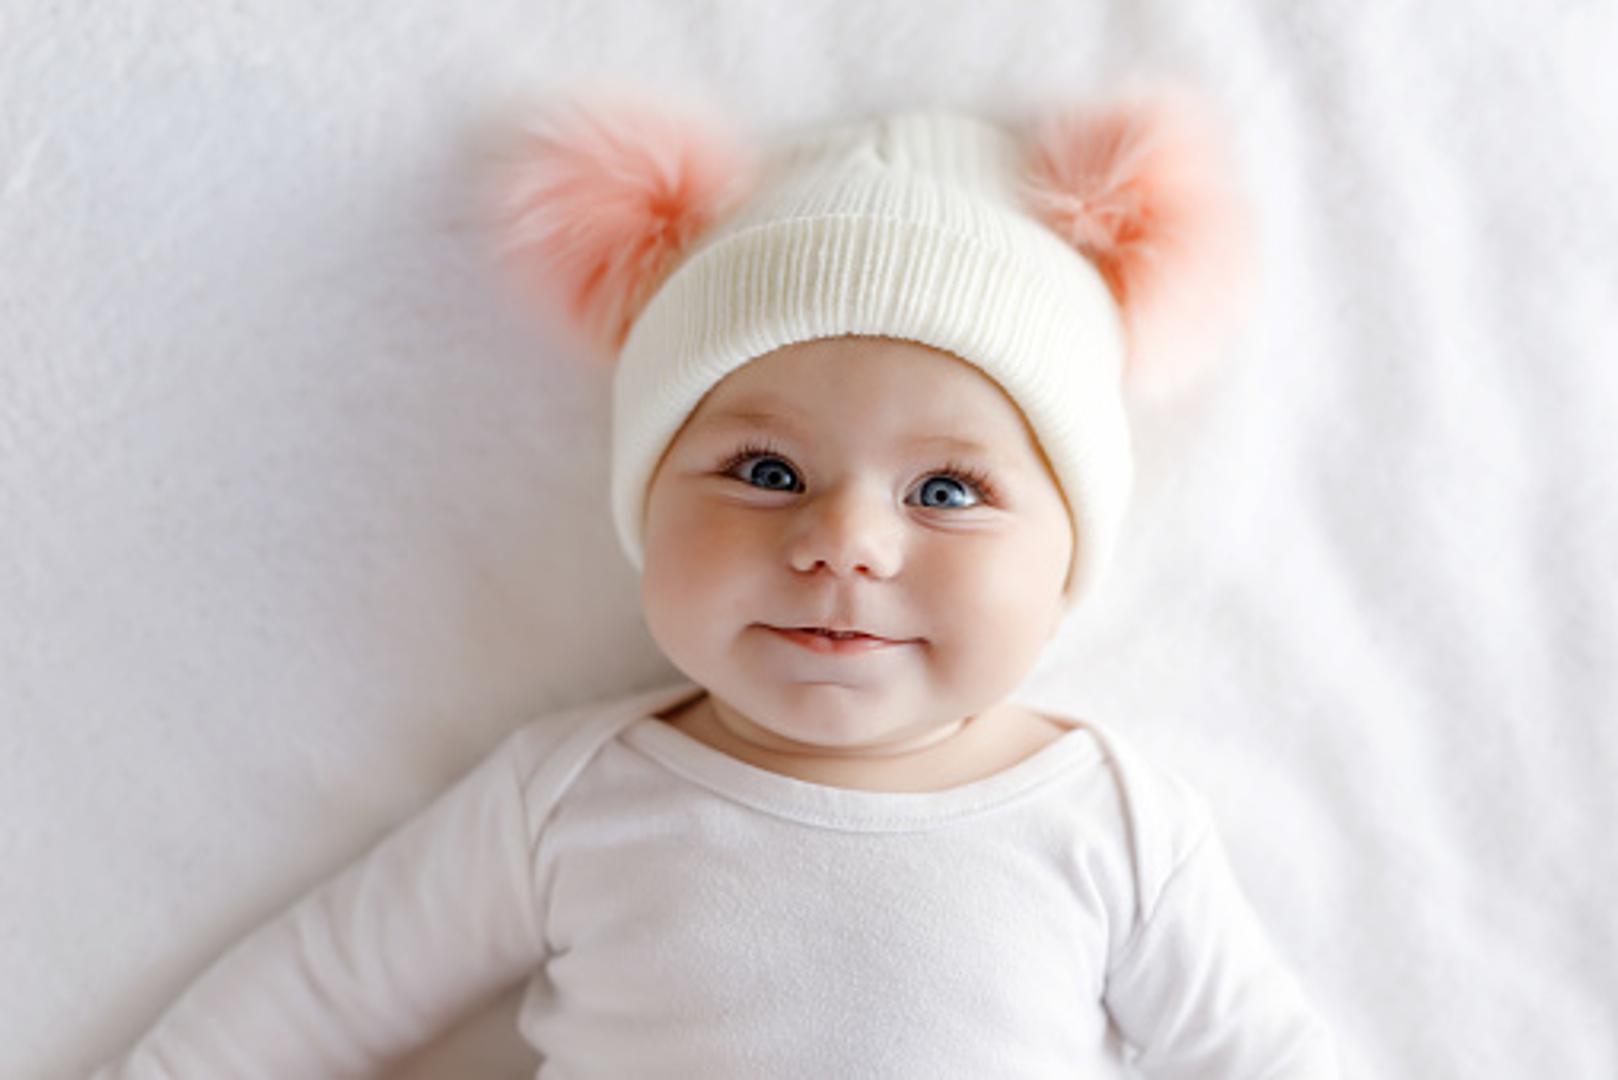 Stavljajte bebi kapu na glavu kako ne bi imala klempave uši - Konstantno nošenje kape kod male djece može dovesti do "pregrijavanja" tijela, što svakako želite izbjeći ako pazite na djetetovo zdravlje, a klempavost nema veze s nošenjem kape već s genetikom.